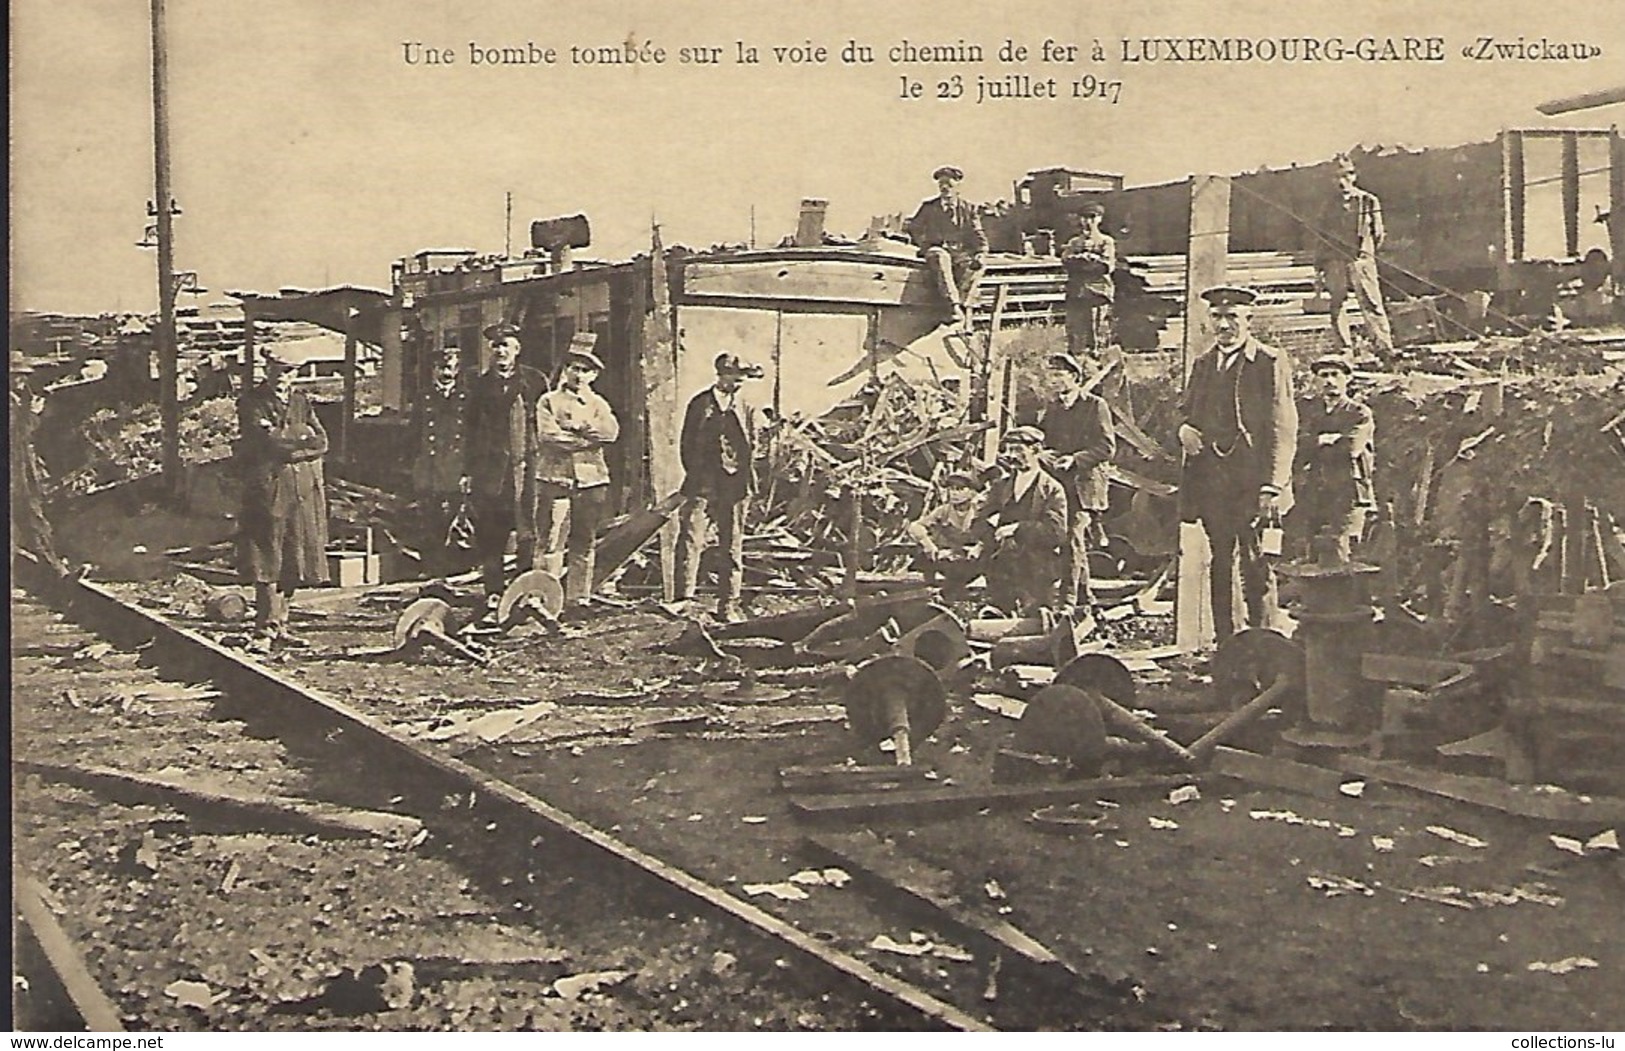 Une Bombe Tombée Sur La Voie Du Chemin De Fer à Luxembourg " Zwickau ",le 23.7.1917  -  Edit. Théo Wirol,Luxembourg-Gare - 1914-18